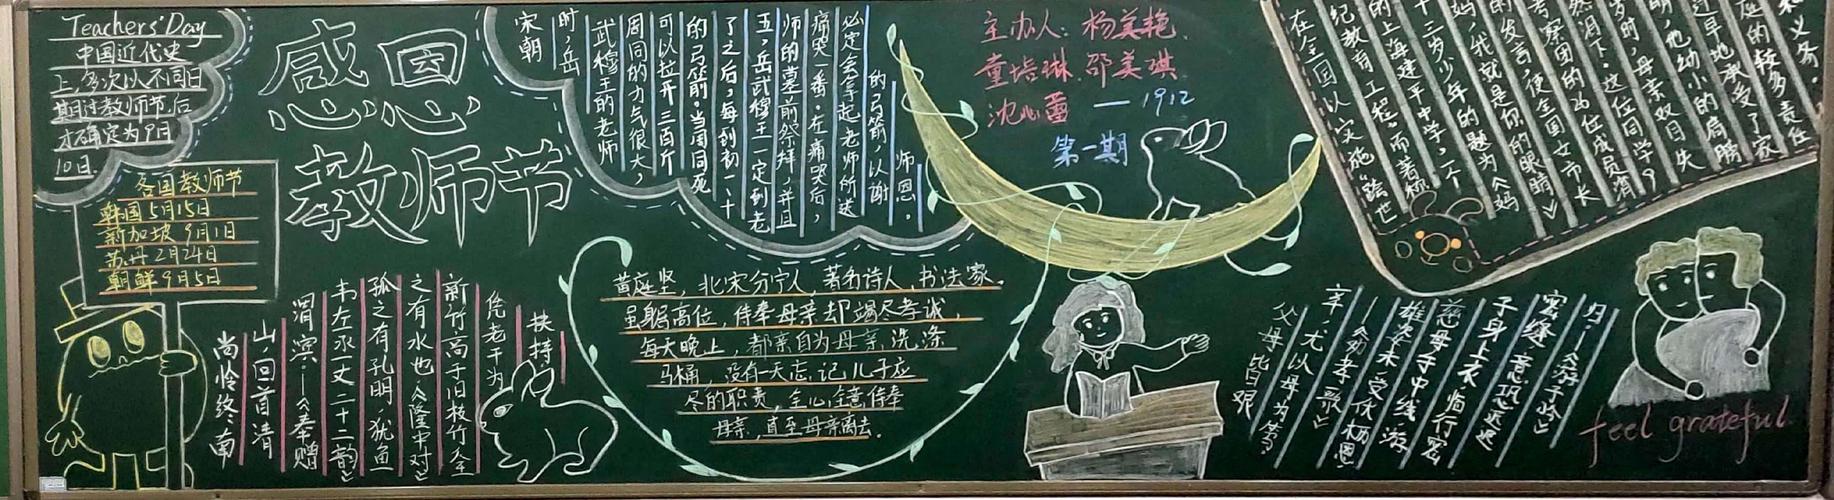 沅江玉潭初中部黑板报评比2020下第一学月